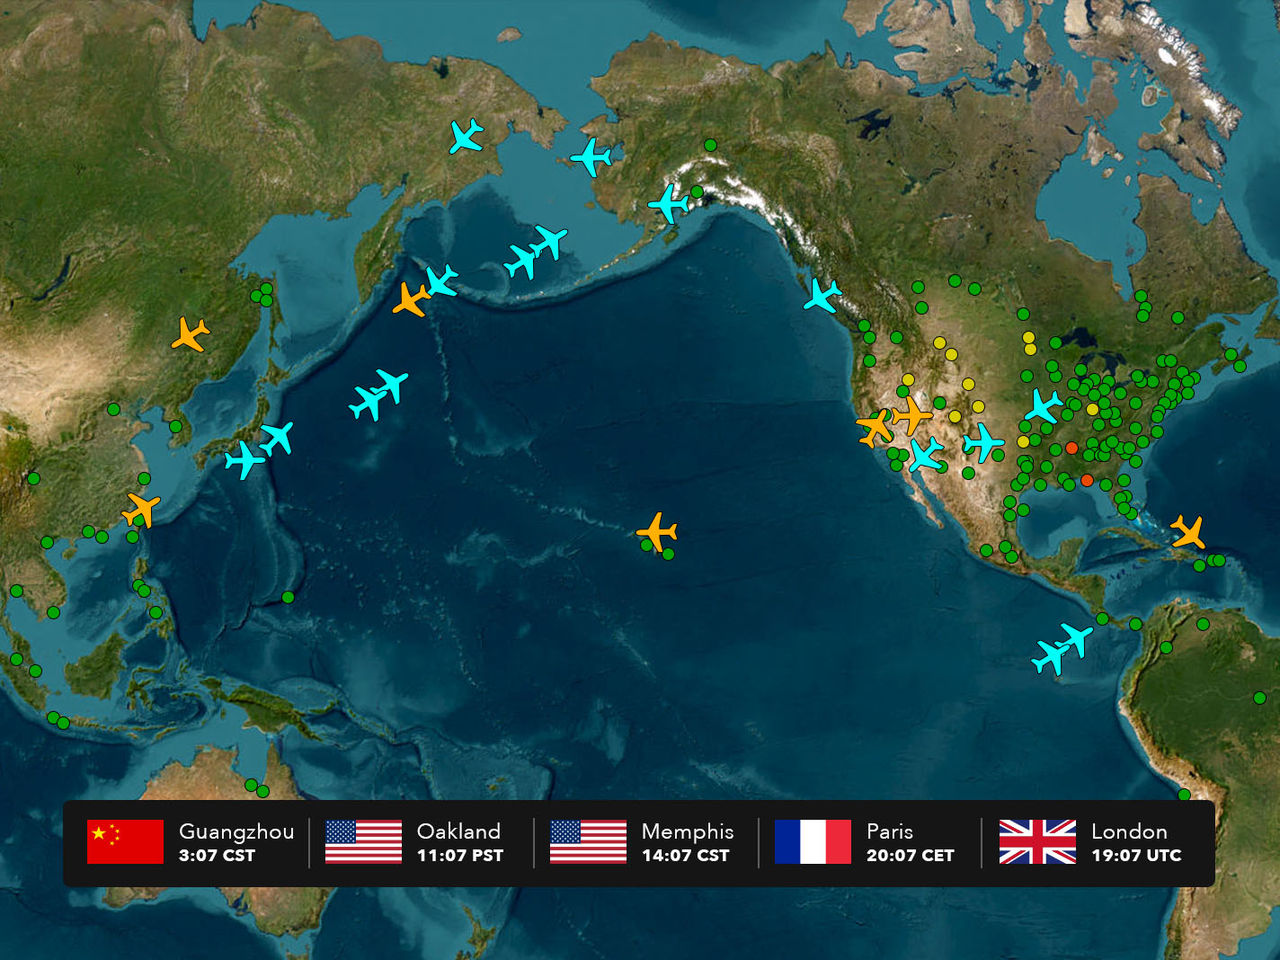 Mapa do globo mostrando pontos e ícones em forma de avião em cores diferentes, com uma barra exibida na parte inferior mostrando 5 fusos horários